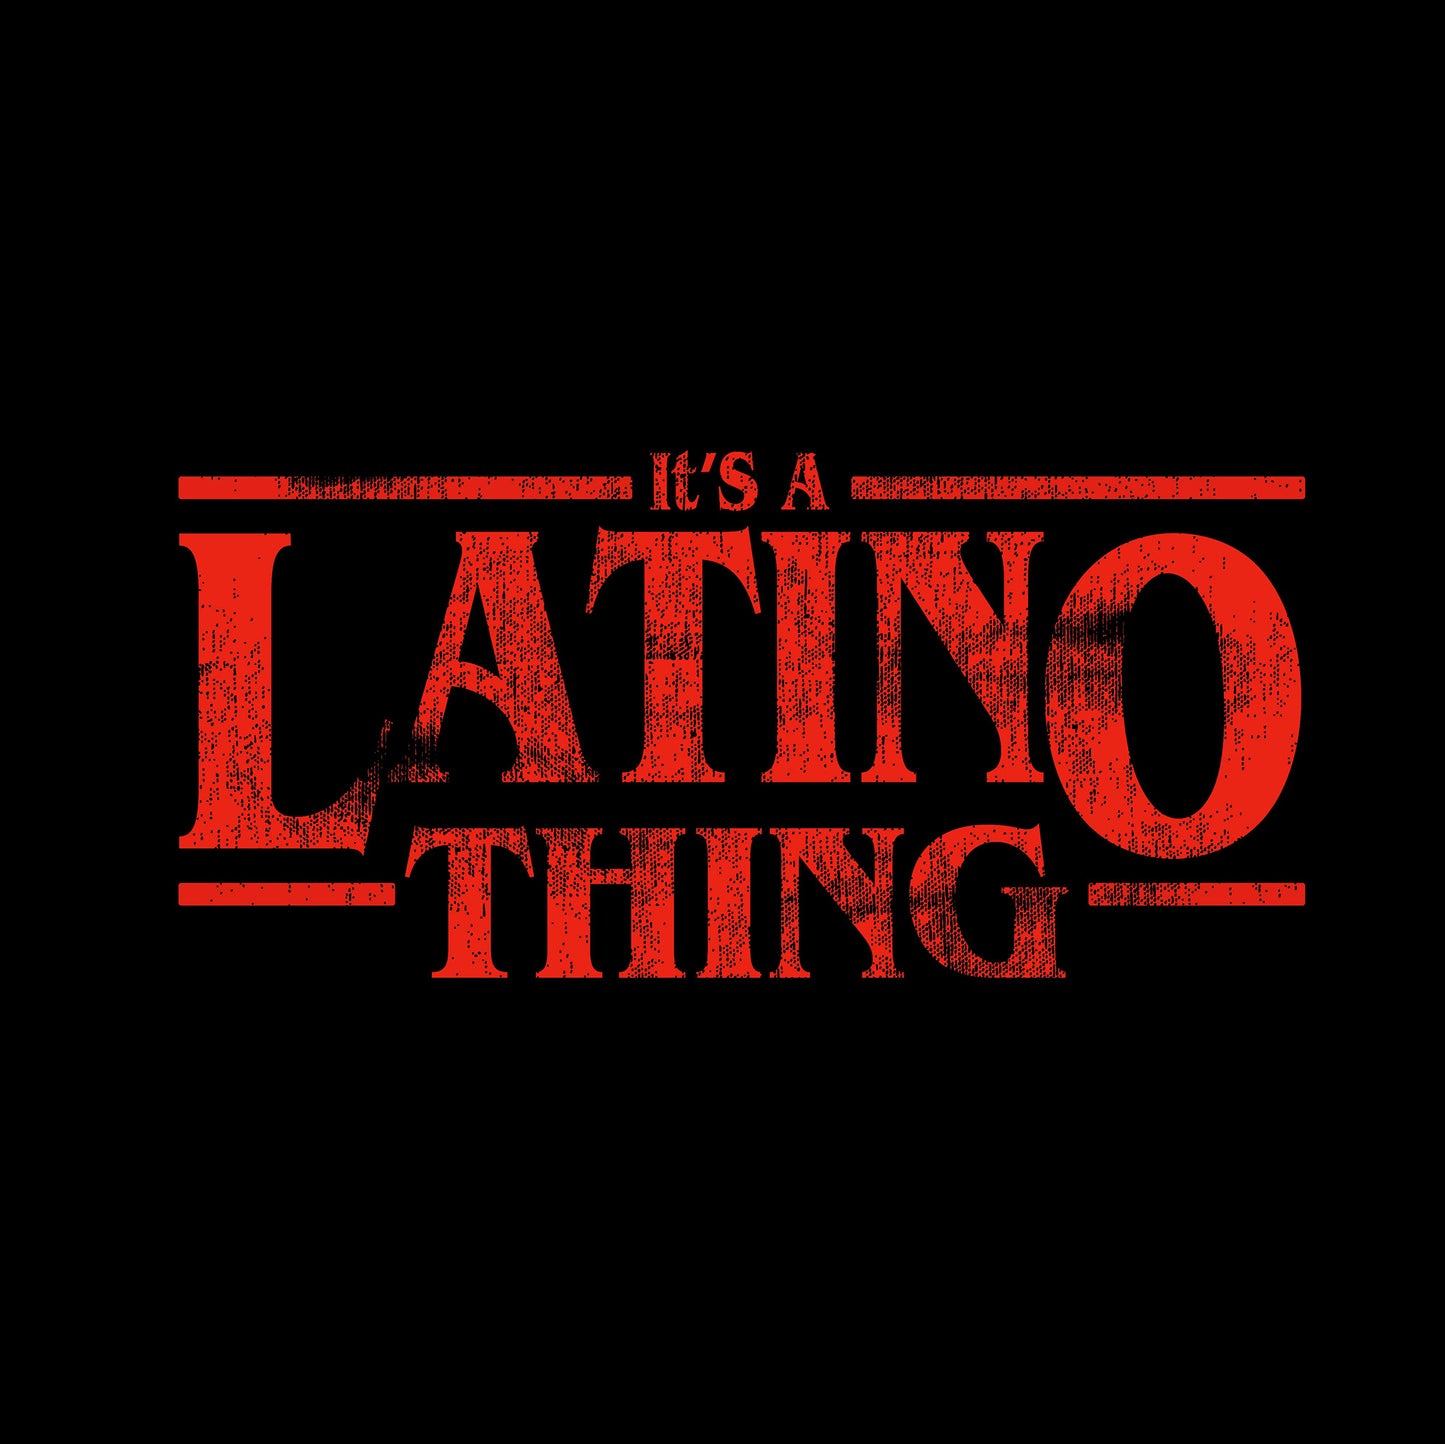 Latino Thing (Kids)